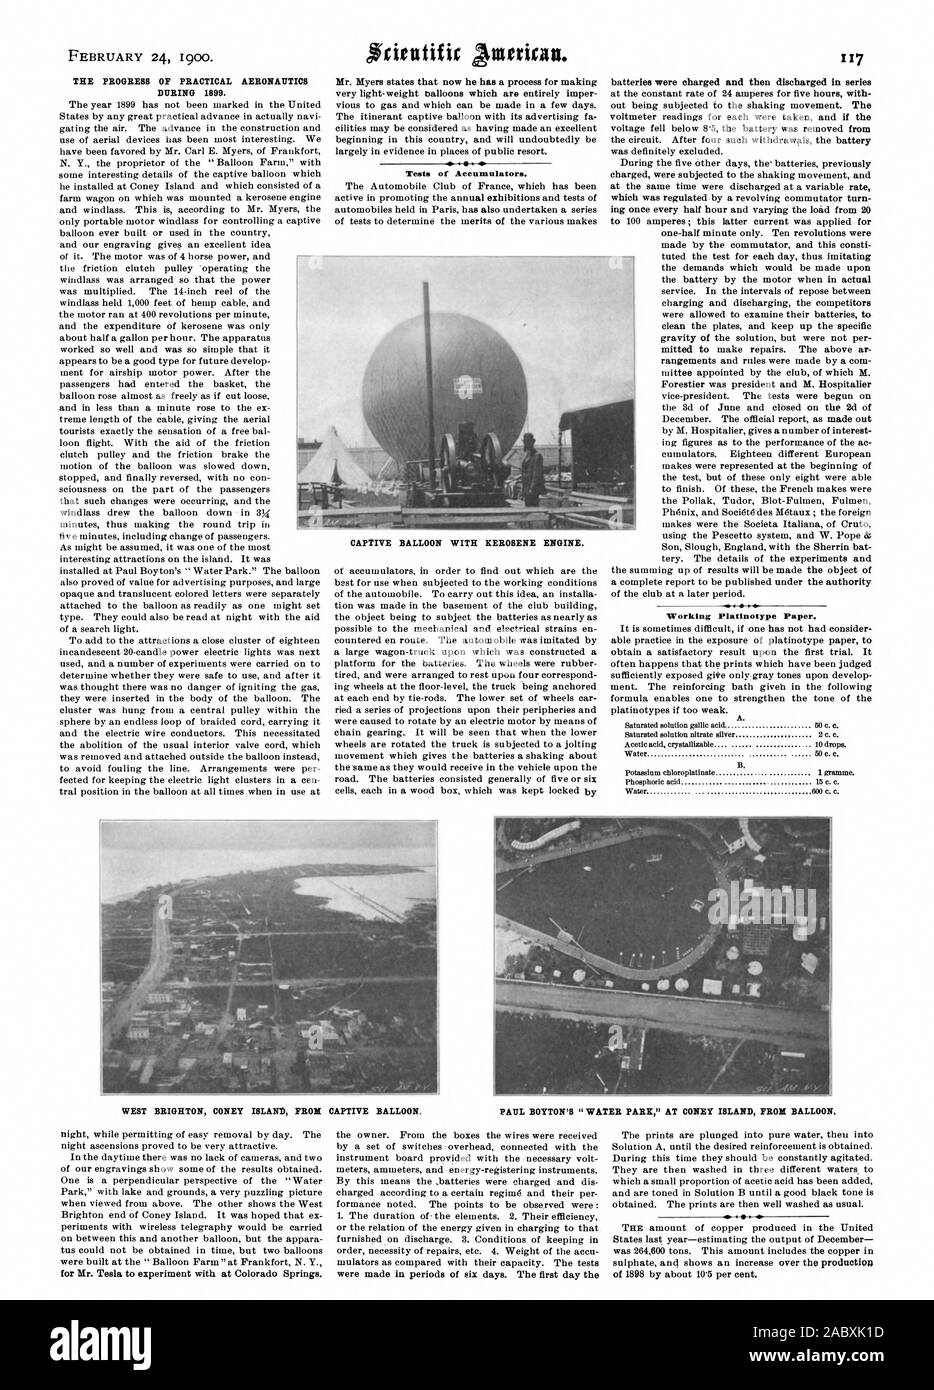 Les progrès de l'aéronautique PRATIQUE AU COURS DE 1899. Des tests d'accumulateurs. Platinotype de travail papier. Ballon captif avec moteur à pétrole. WEST BRIGHTON Coney Island de ballon captif. PAUL BOYTON1 'WATER PARK" à Coney Island DE BALLON, Scientific American, 1900-1902-24 Banque D'Images